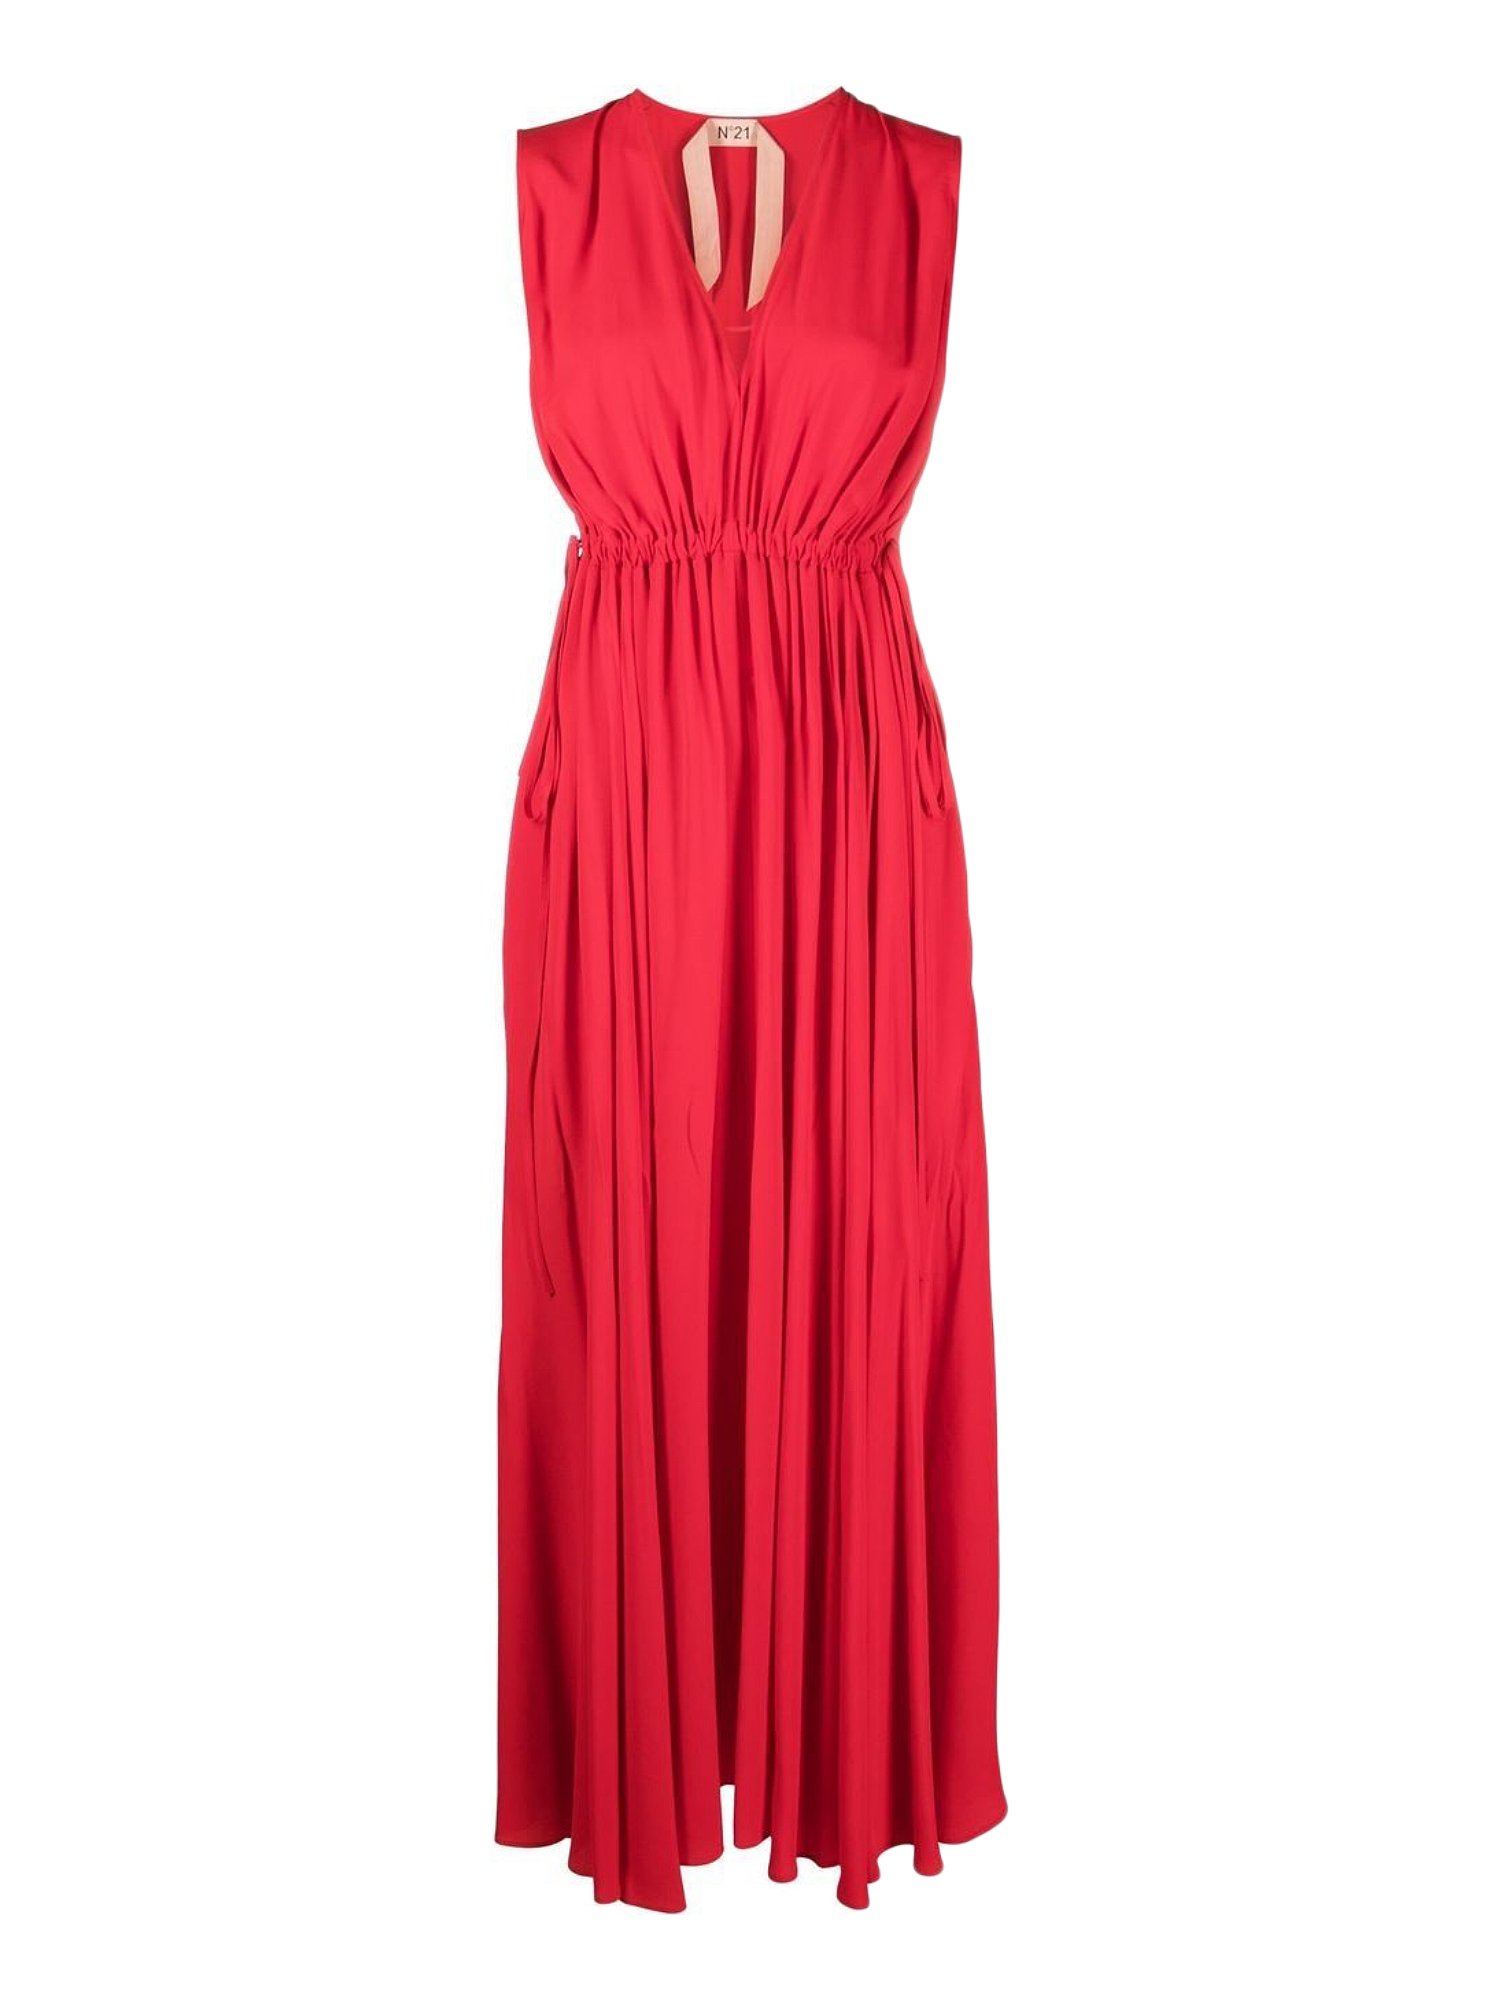 N°21 WOMEN'S DRESSES - N 21 - IN RED SYNTHETIC FIBERS